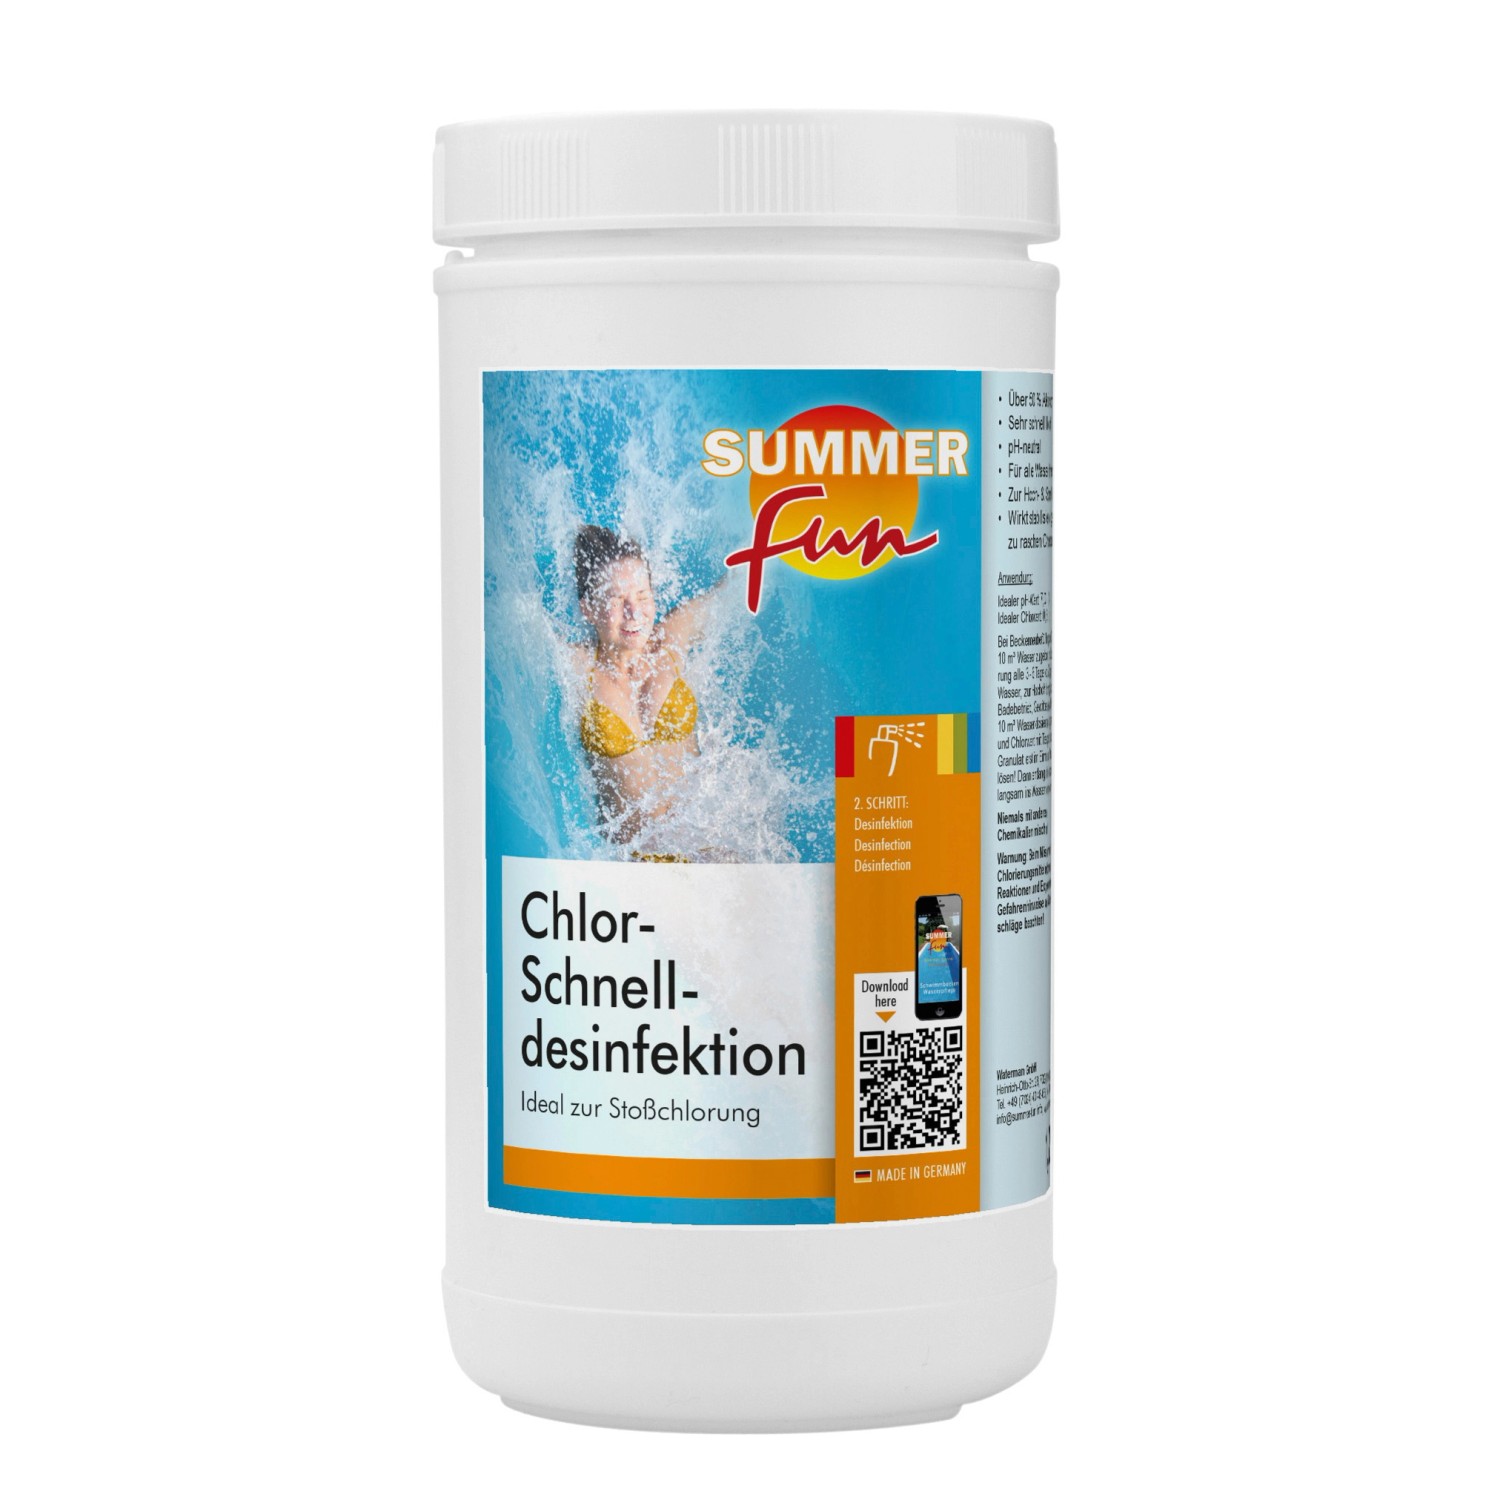 Summer Fun Chlor-Schnell-Desinfektion 1,2 kg für Stoßchlorungen